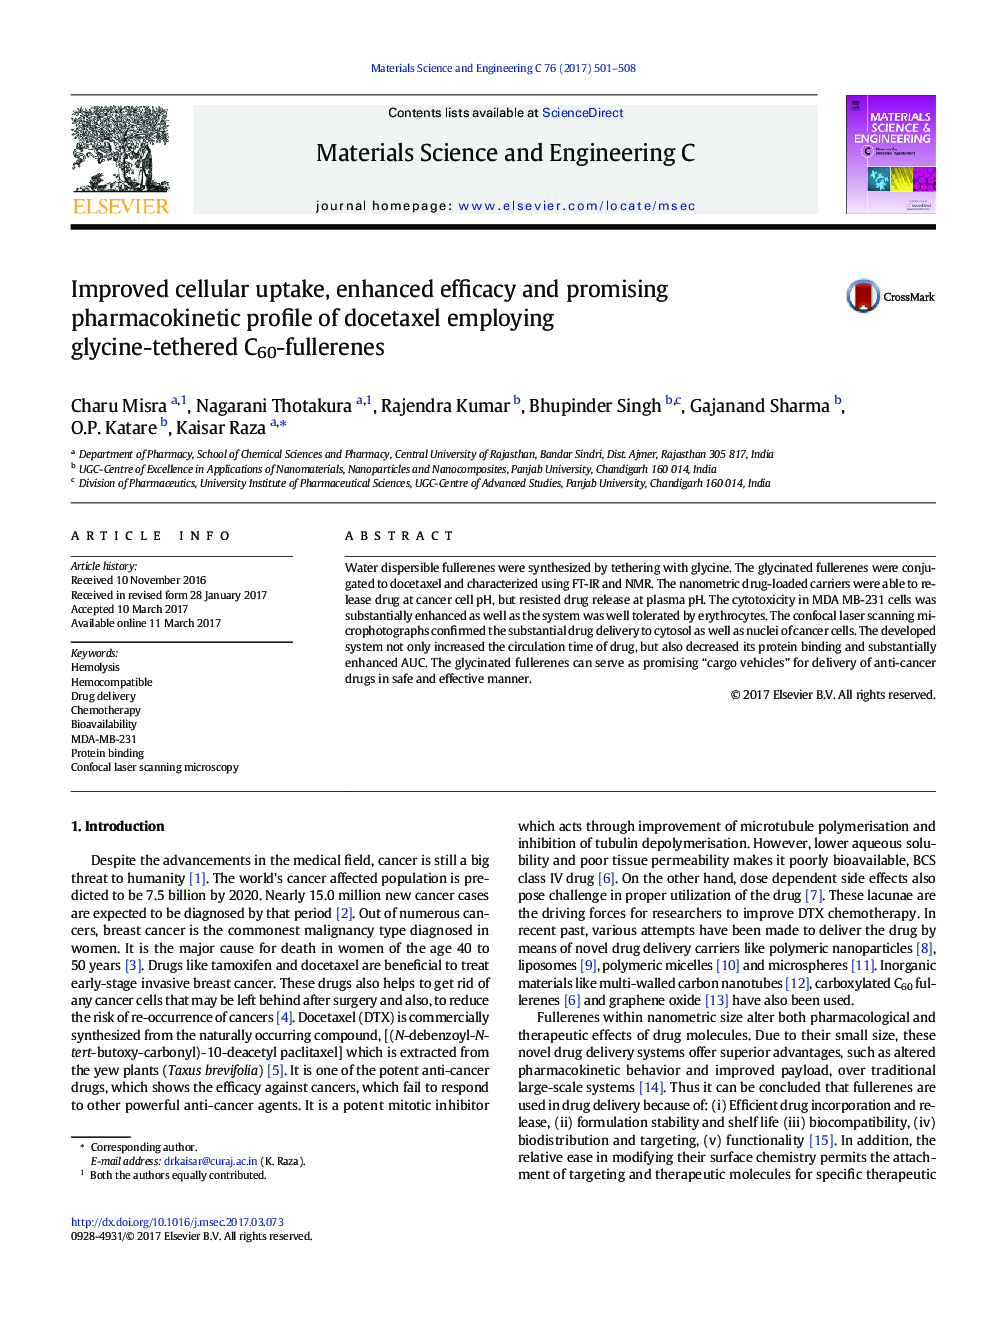 Improved cellular uptake, enhanced efficacy and promising pharmacokinetic profile of docetaxel employing glycine-tethered C60-fullerenes